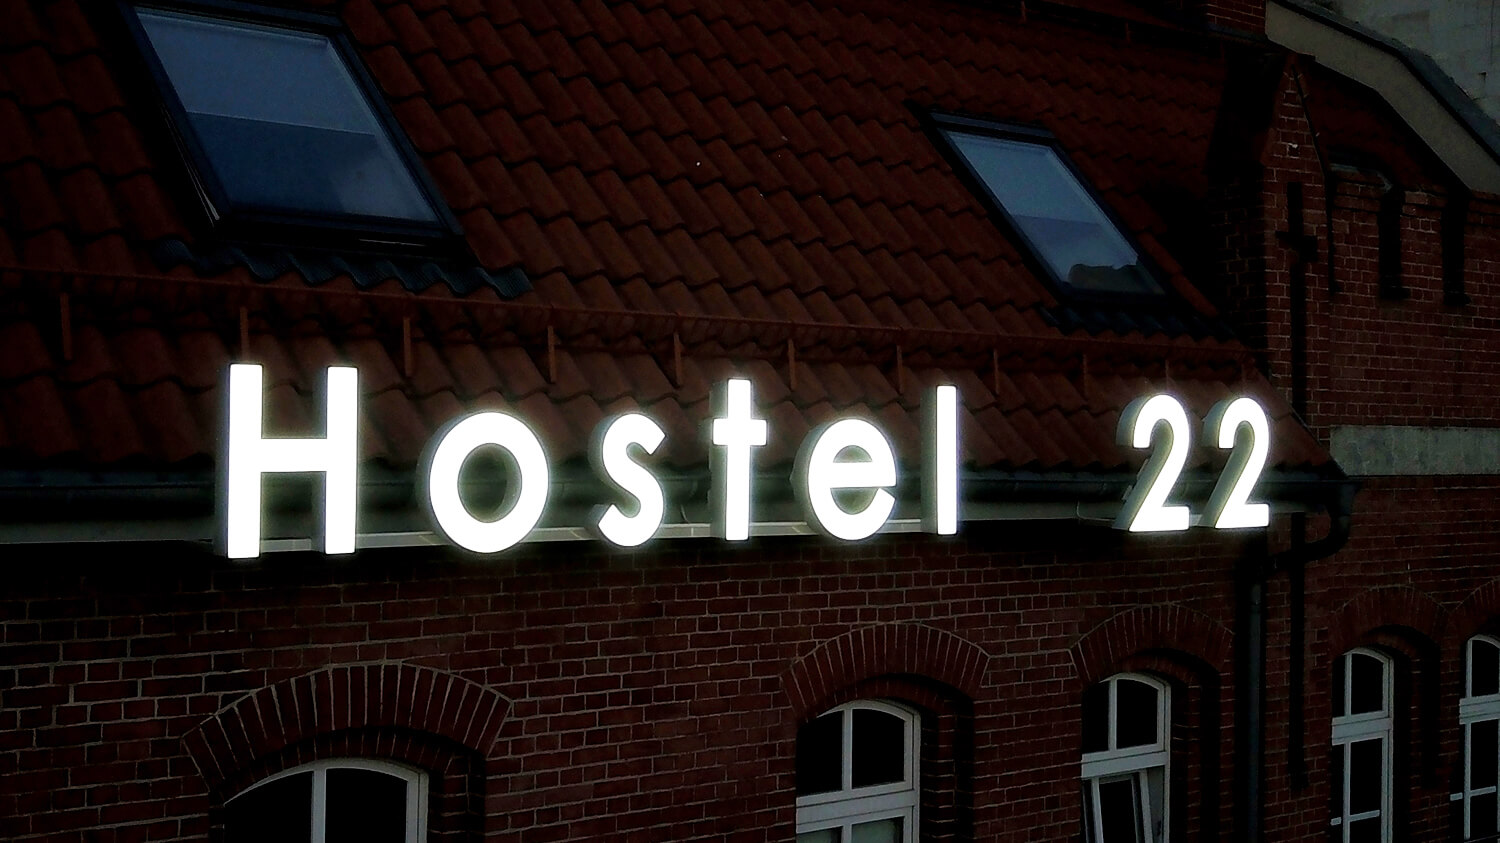 Herberge 22 - Hostel 22 - leichte Raumbuchstaben an der Wand